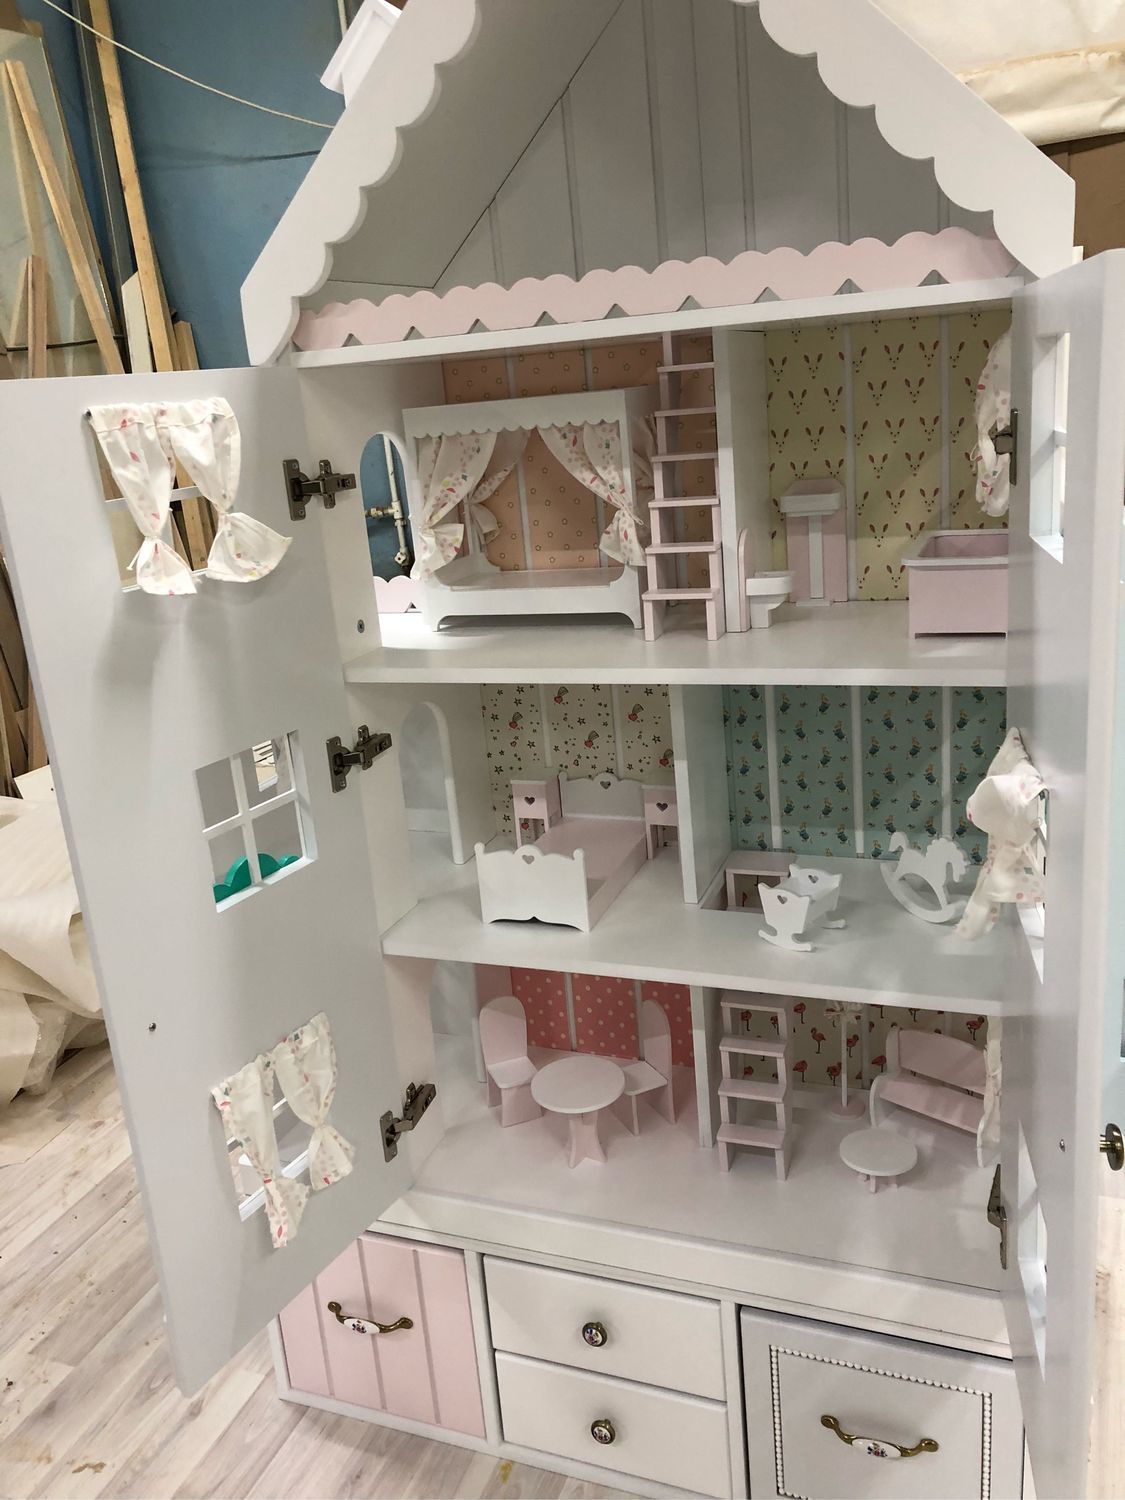 Кукольный дом трехэтажный (шесть комнат, мебель, три куклы)